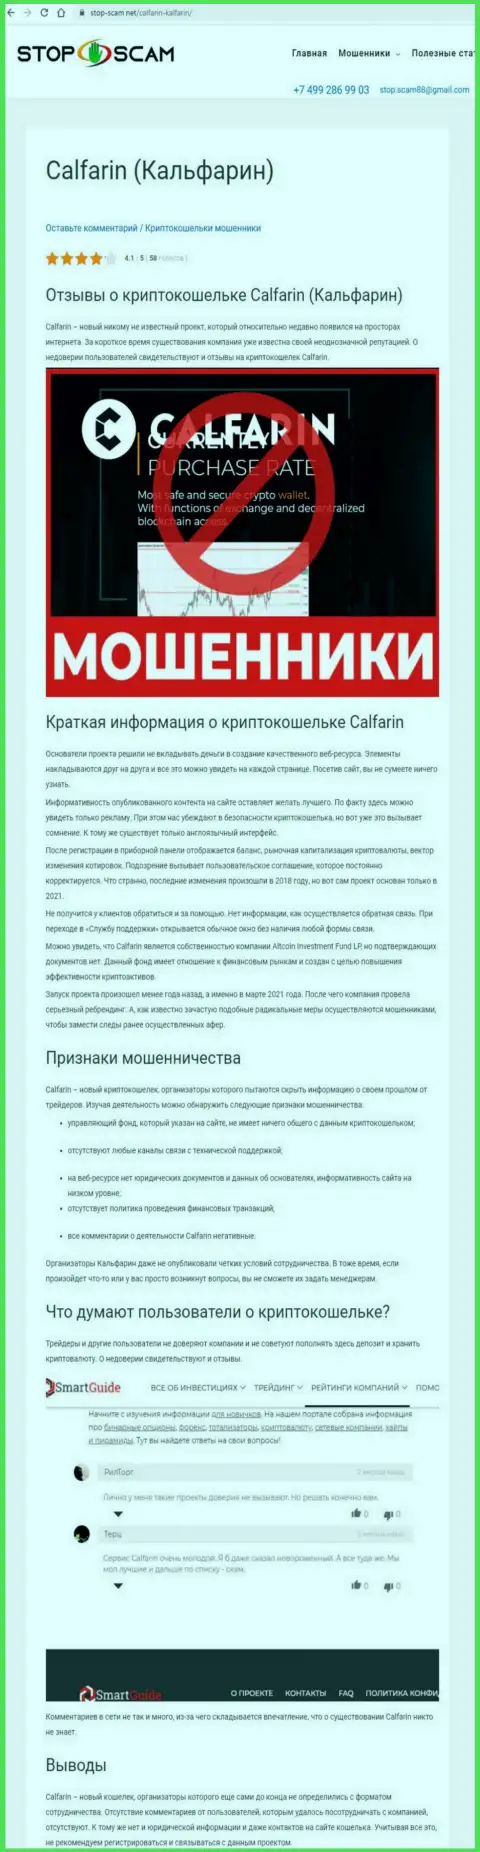 Calfarin Com - МОШЕННИКИ !!! Вложенные Вами денежные активы под угрозой кражи - обзор неправомерных действий